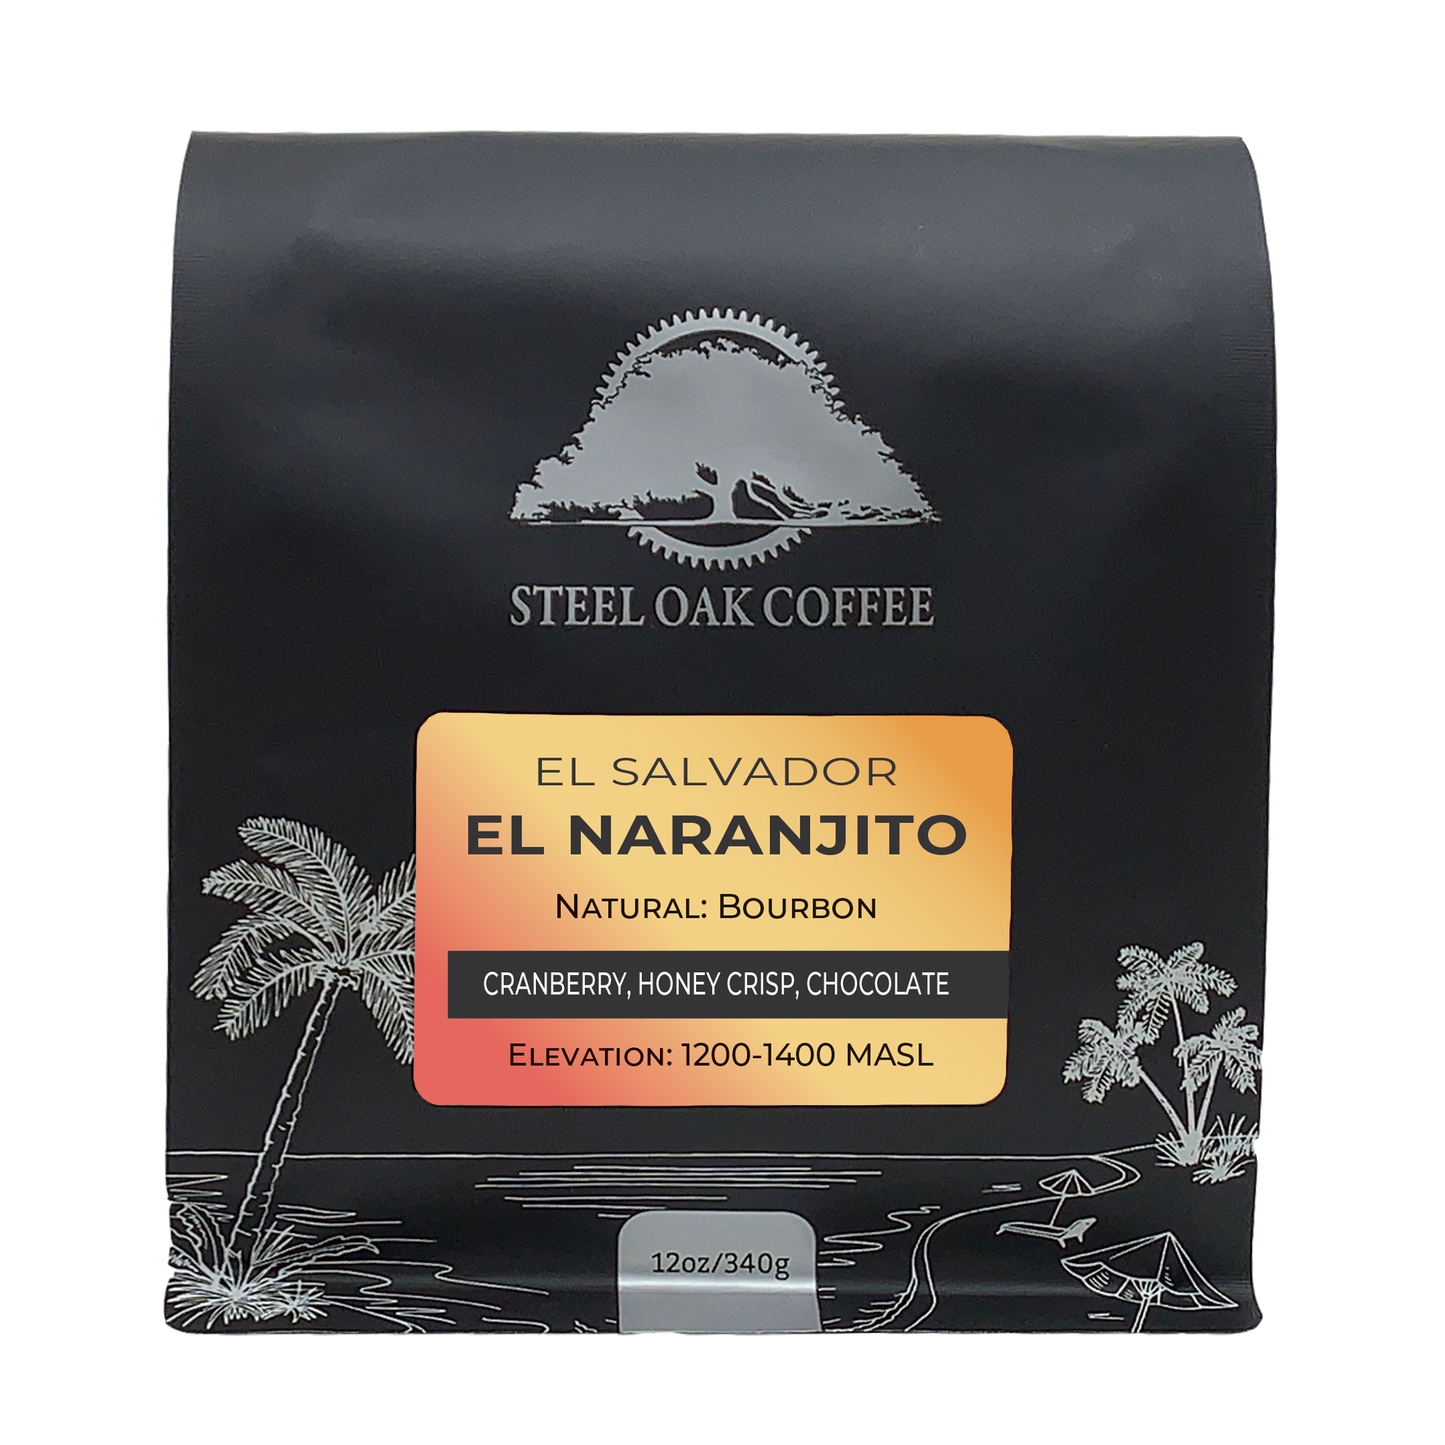 El Salvador - Naranjito (Natural) - Steel Oak Coffee